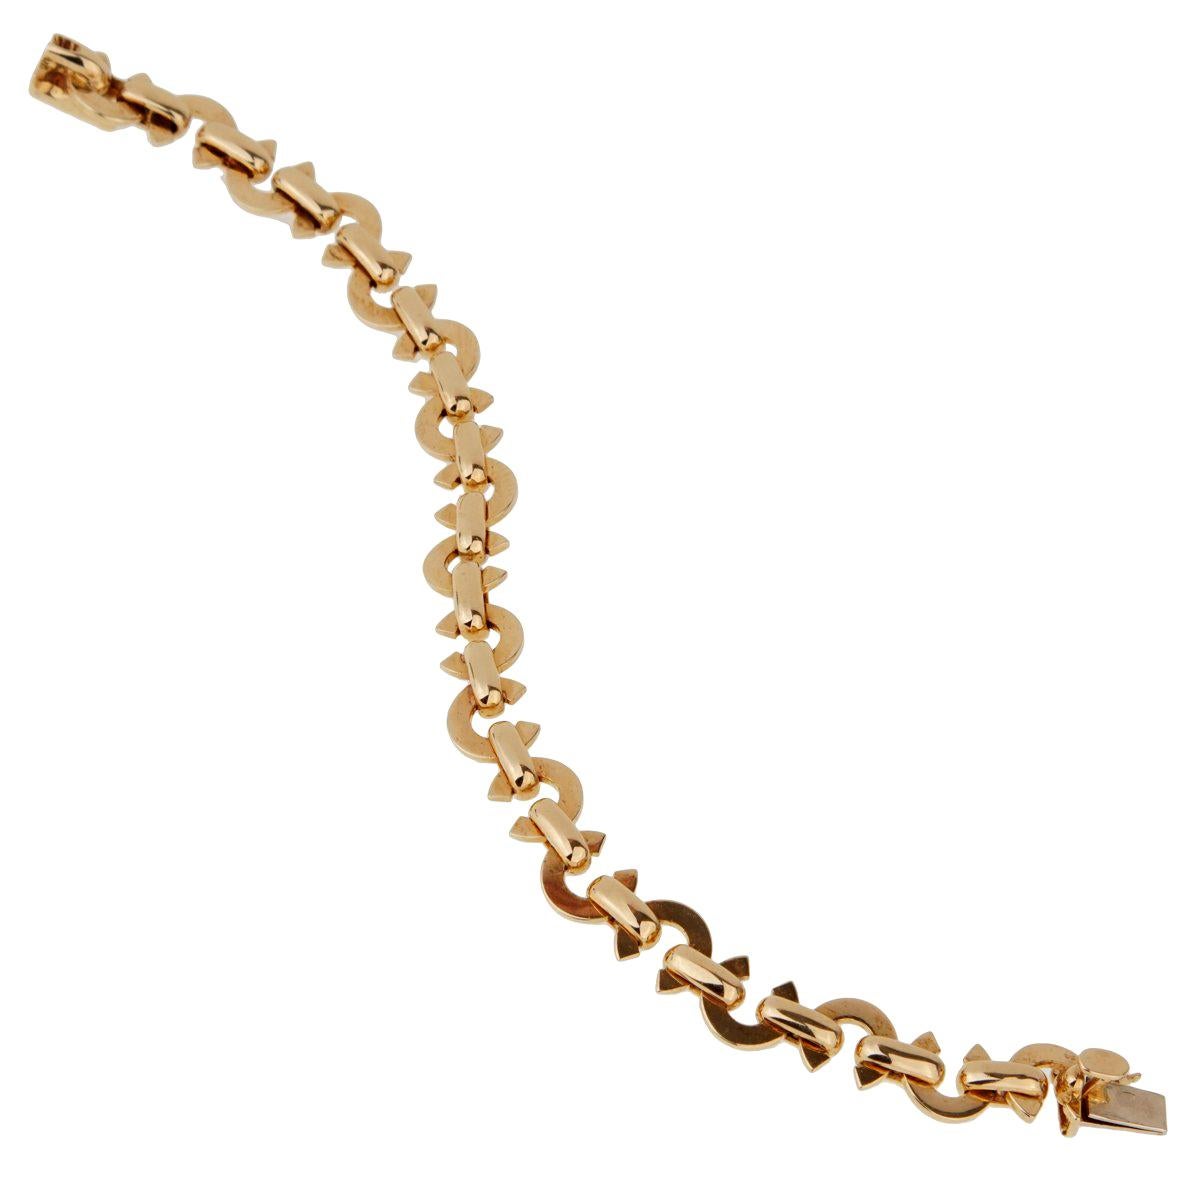 Ein ikonisches Chanel-Charm-Armband mit abwechselnden Chanel C-Motiven aus 18 Karat Gelbgold. Das Armband misst 6 1/4